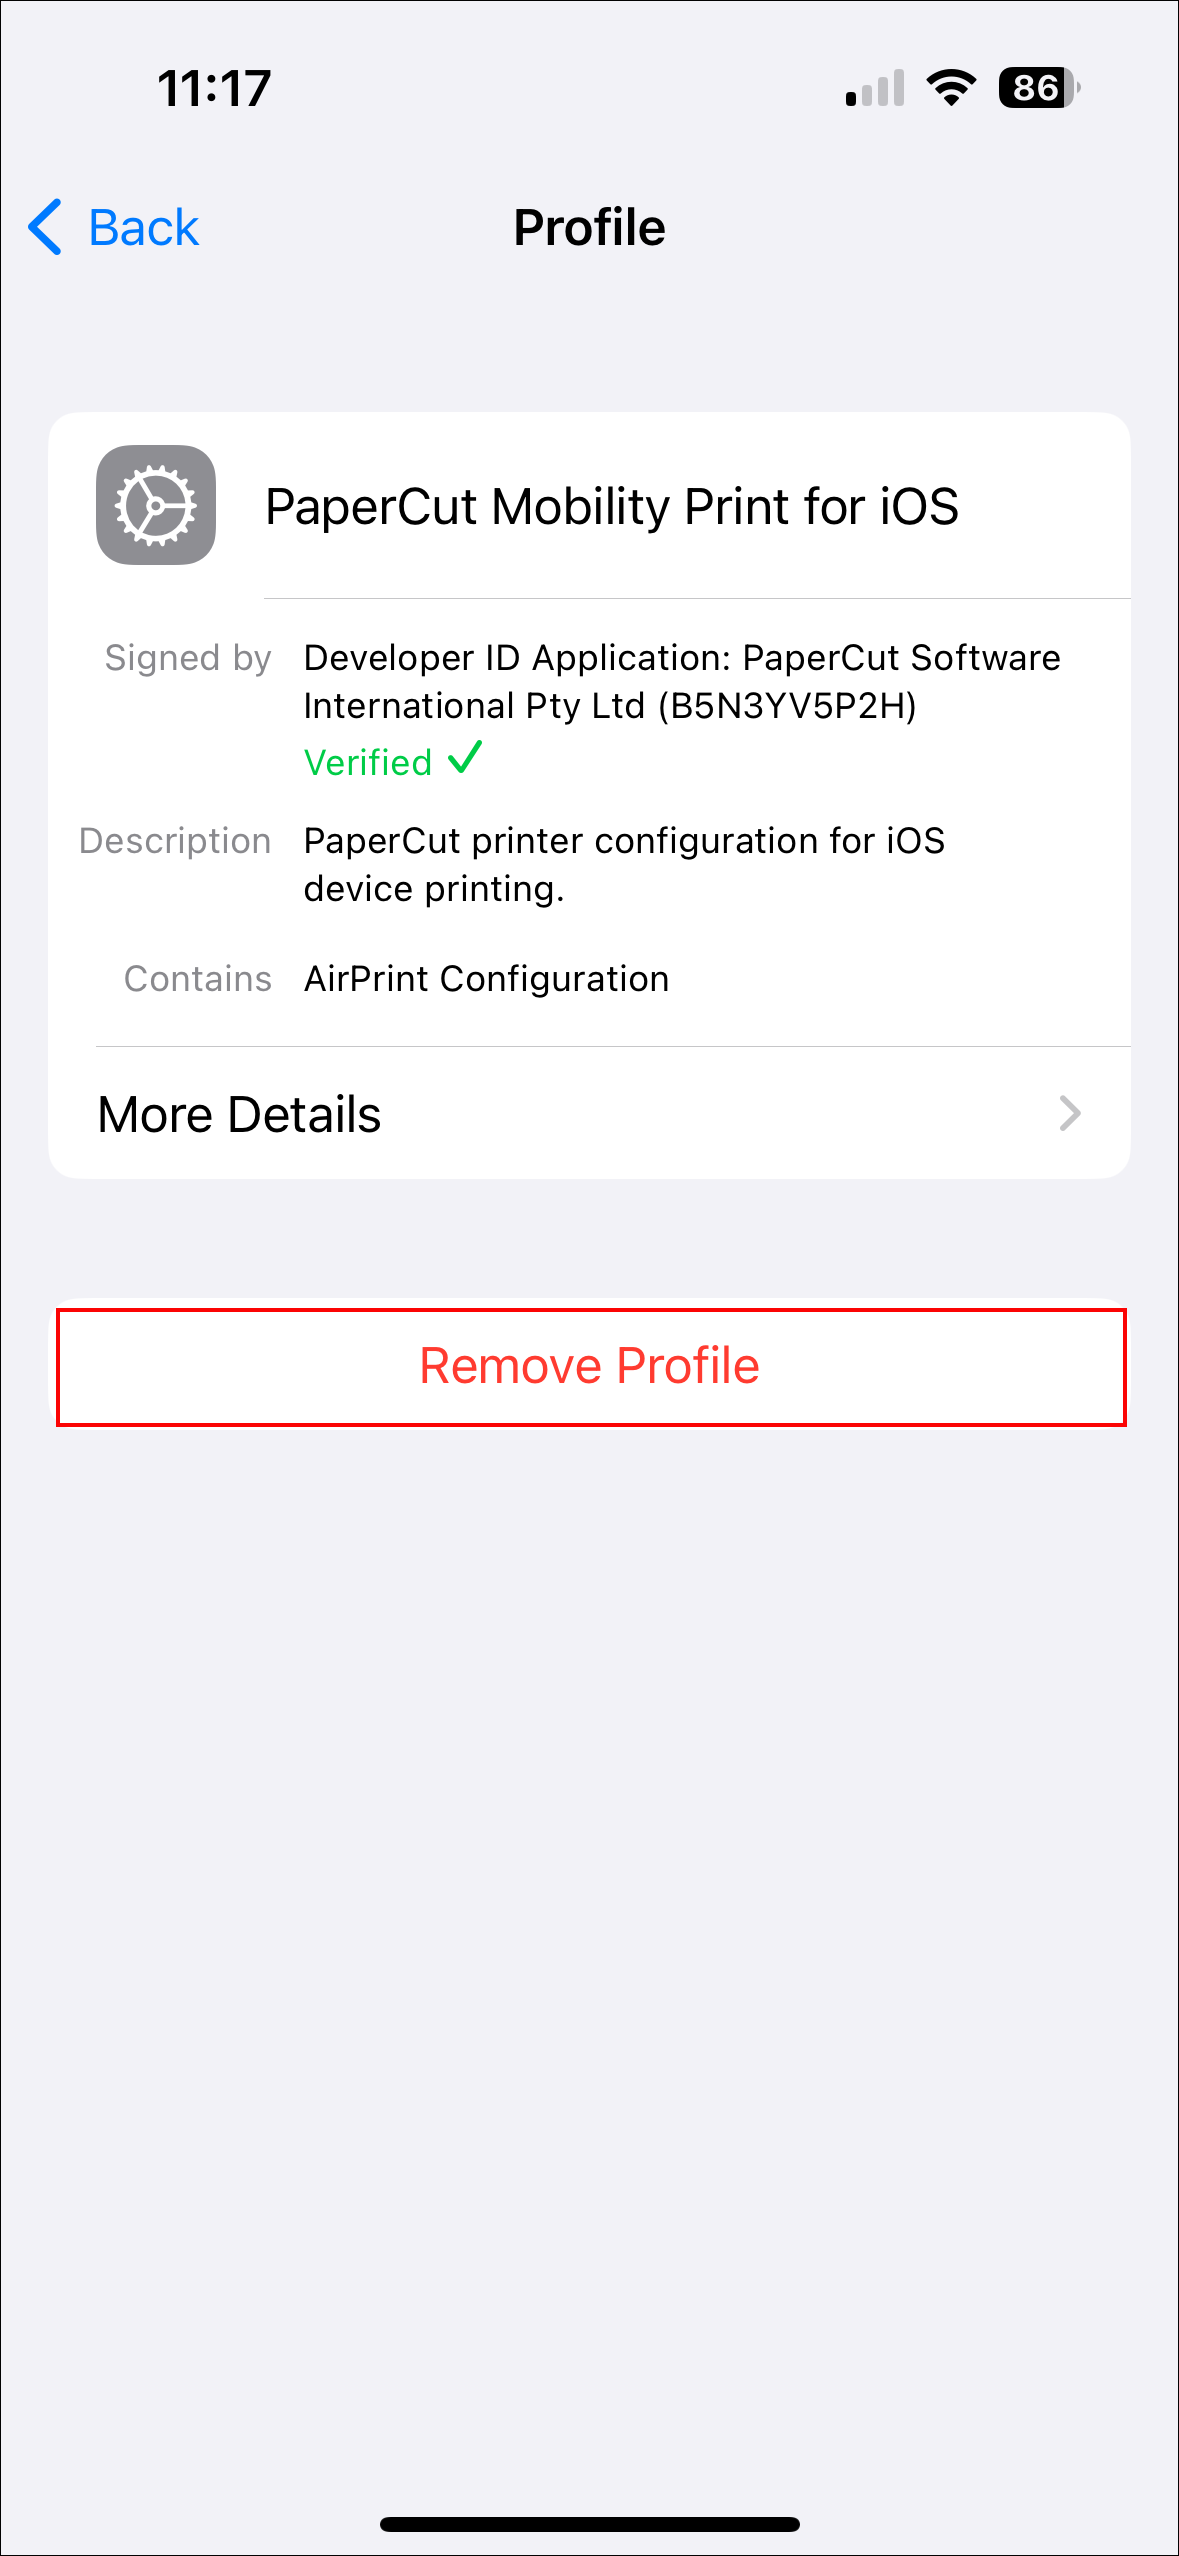 Remove profile option